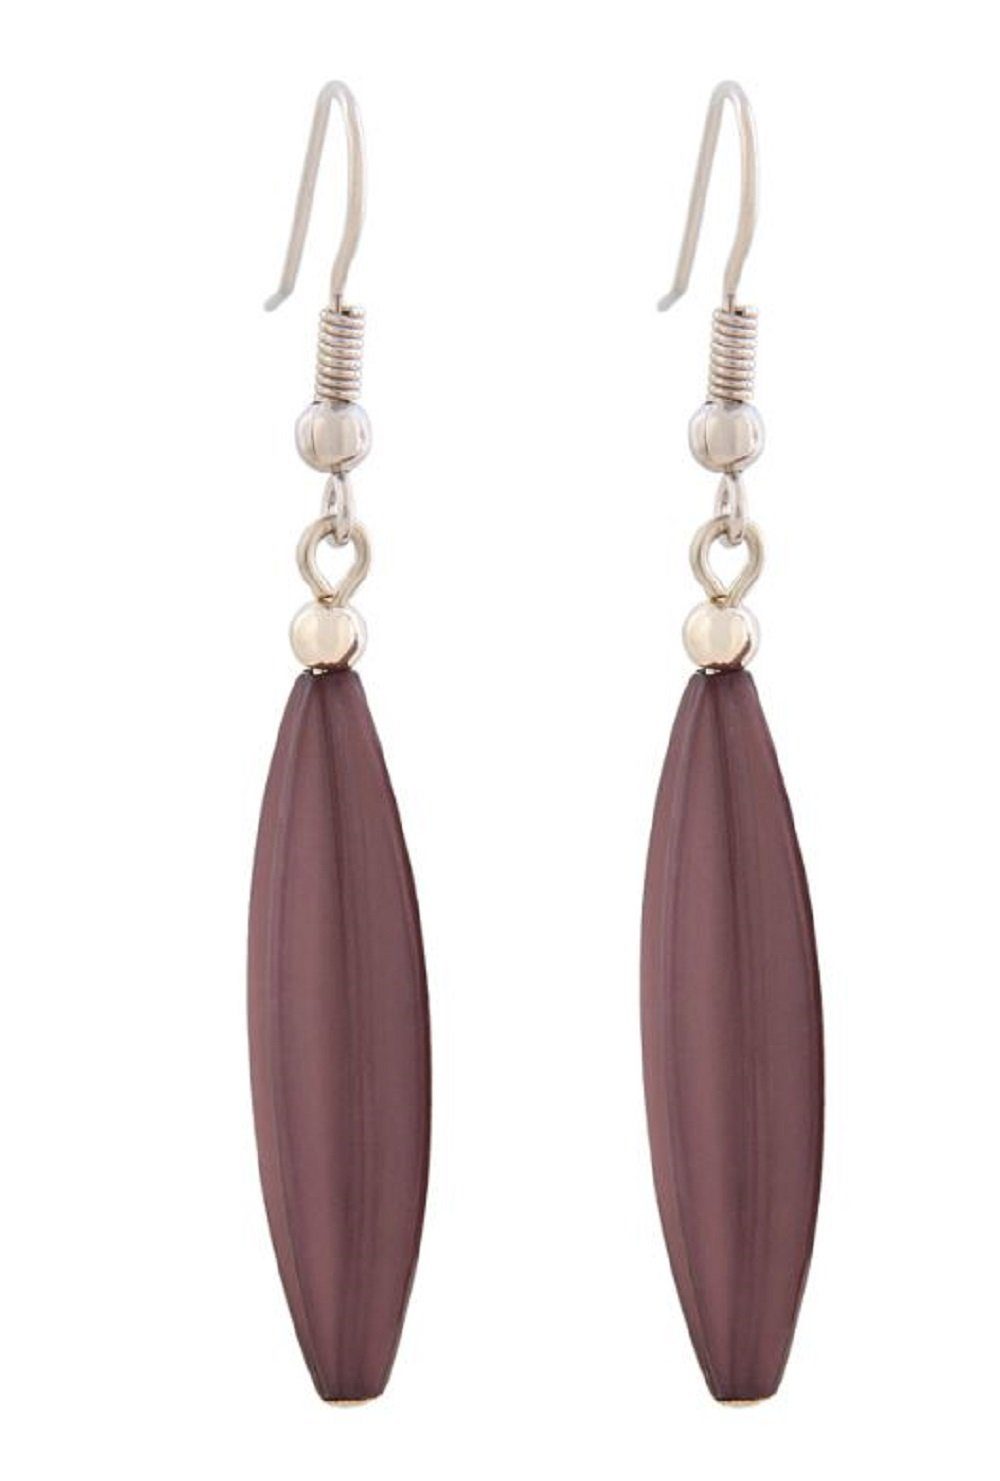 unbespielt Paar Ohrhänger Ohrhaken Ohrringe Rillenolive Kunststoff lilafarben 30 x 9 mm, Modeschmuck für Damen